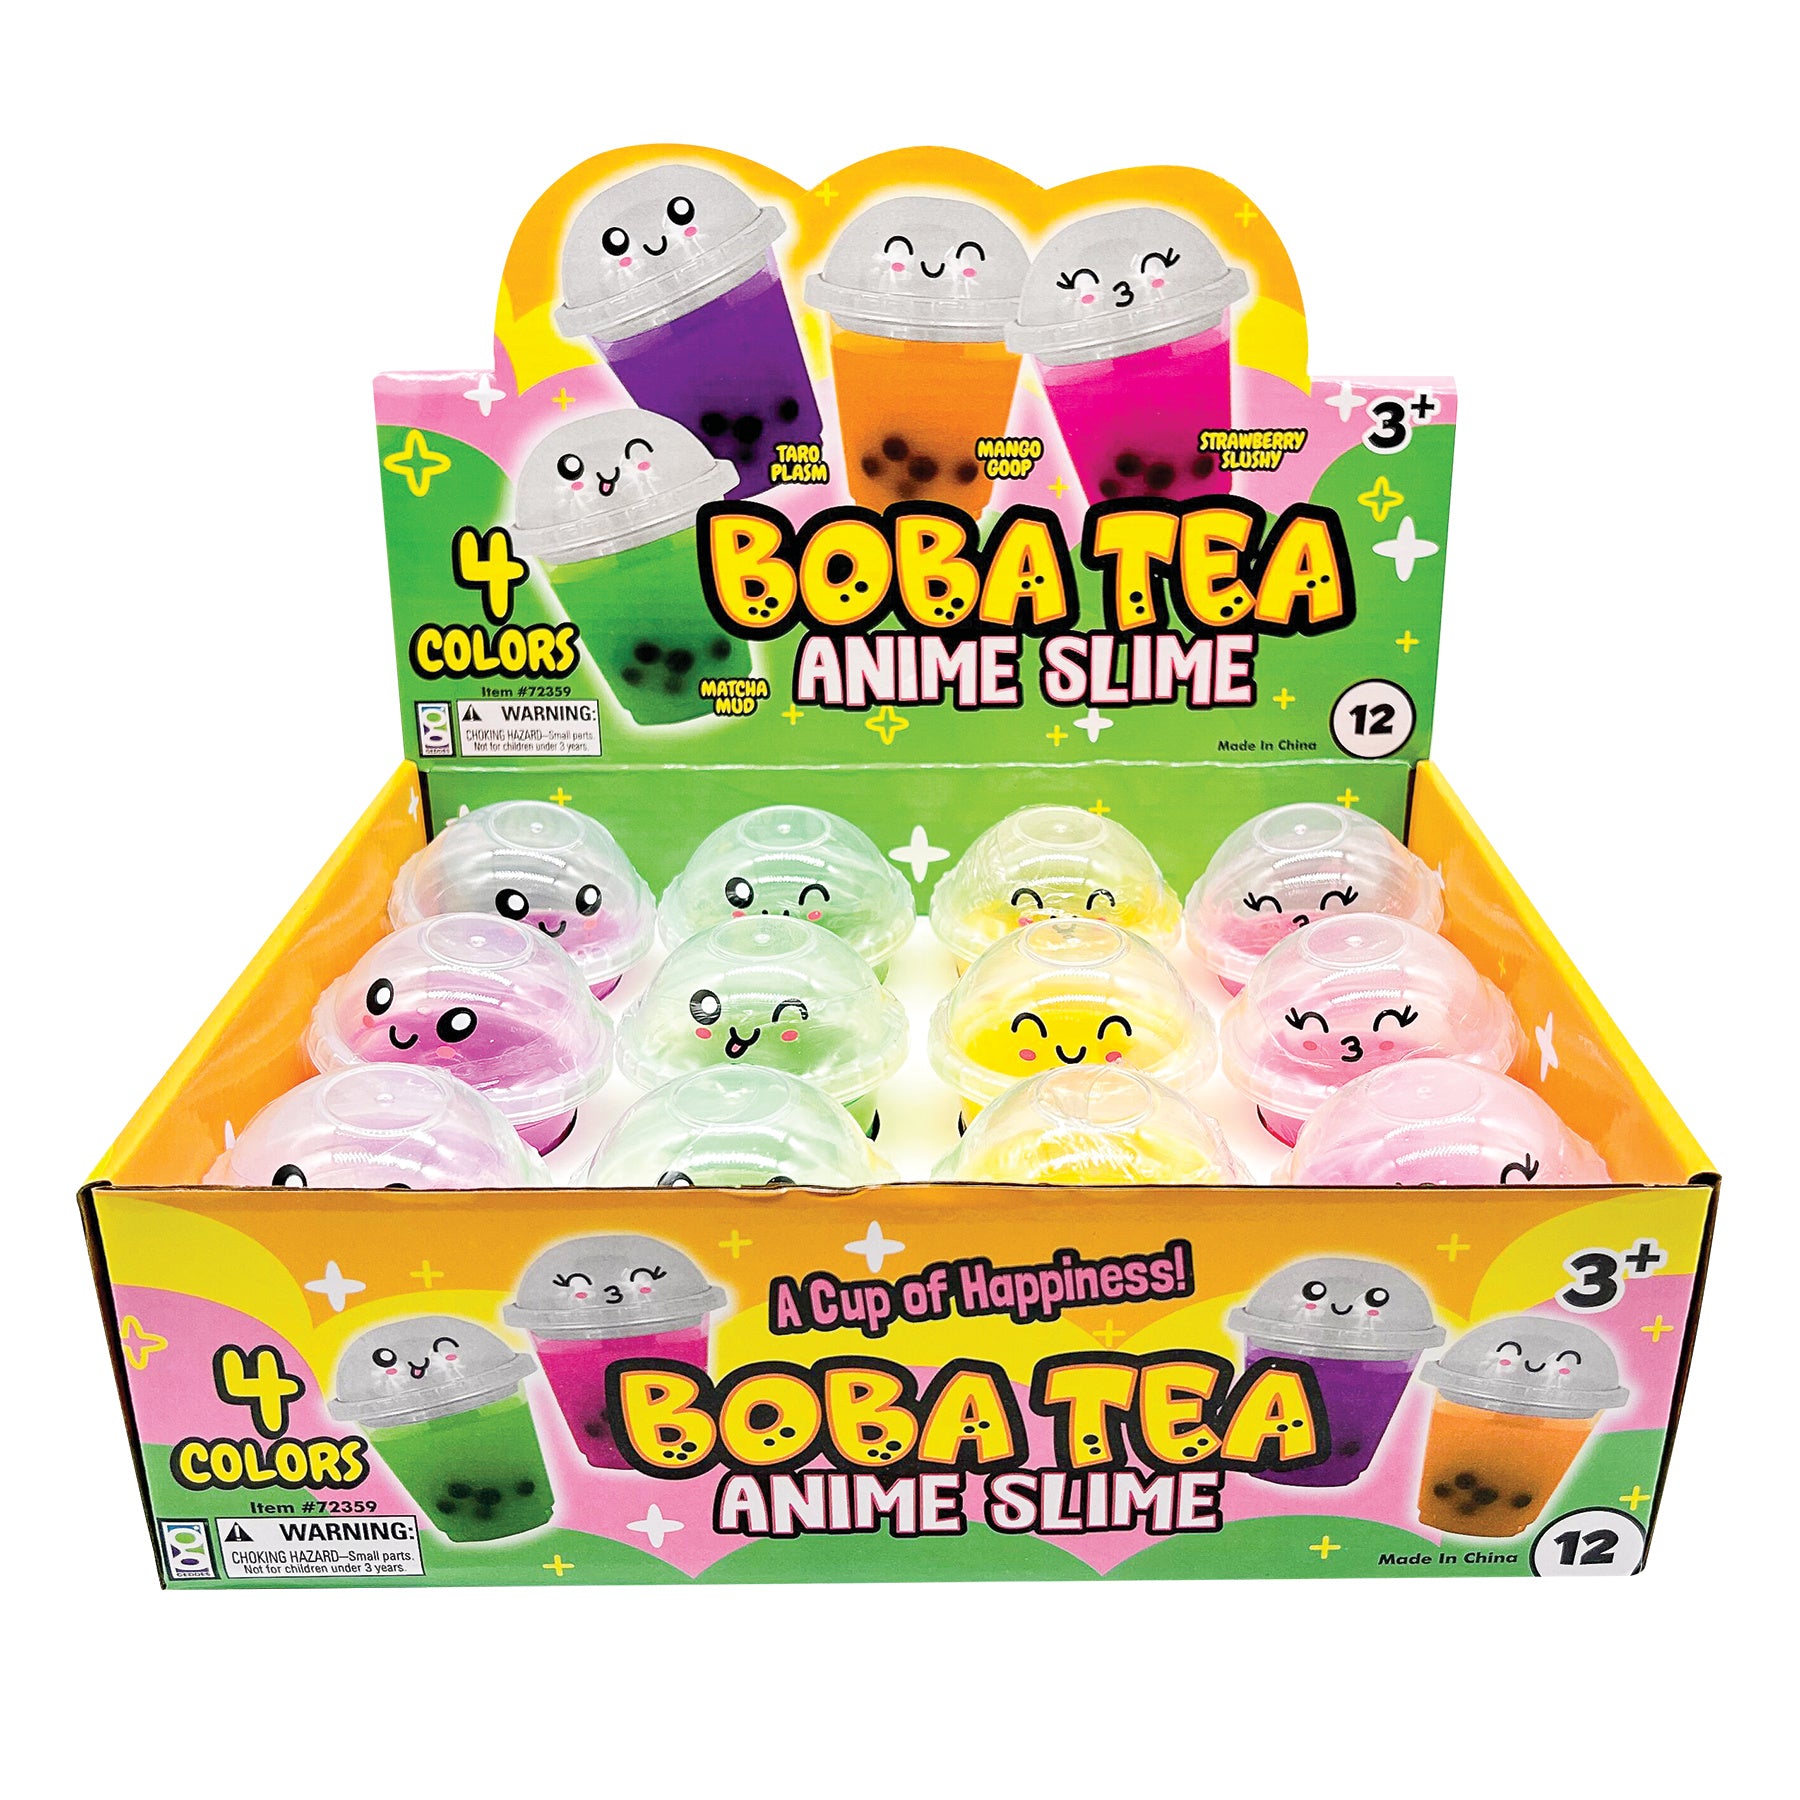 Boba Tea Anime Slime